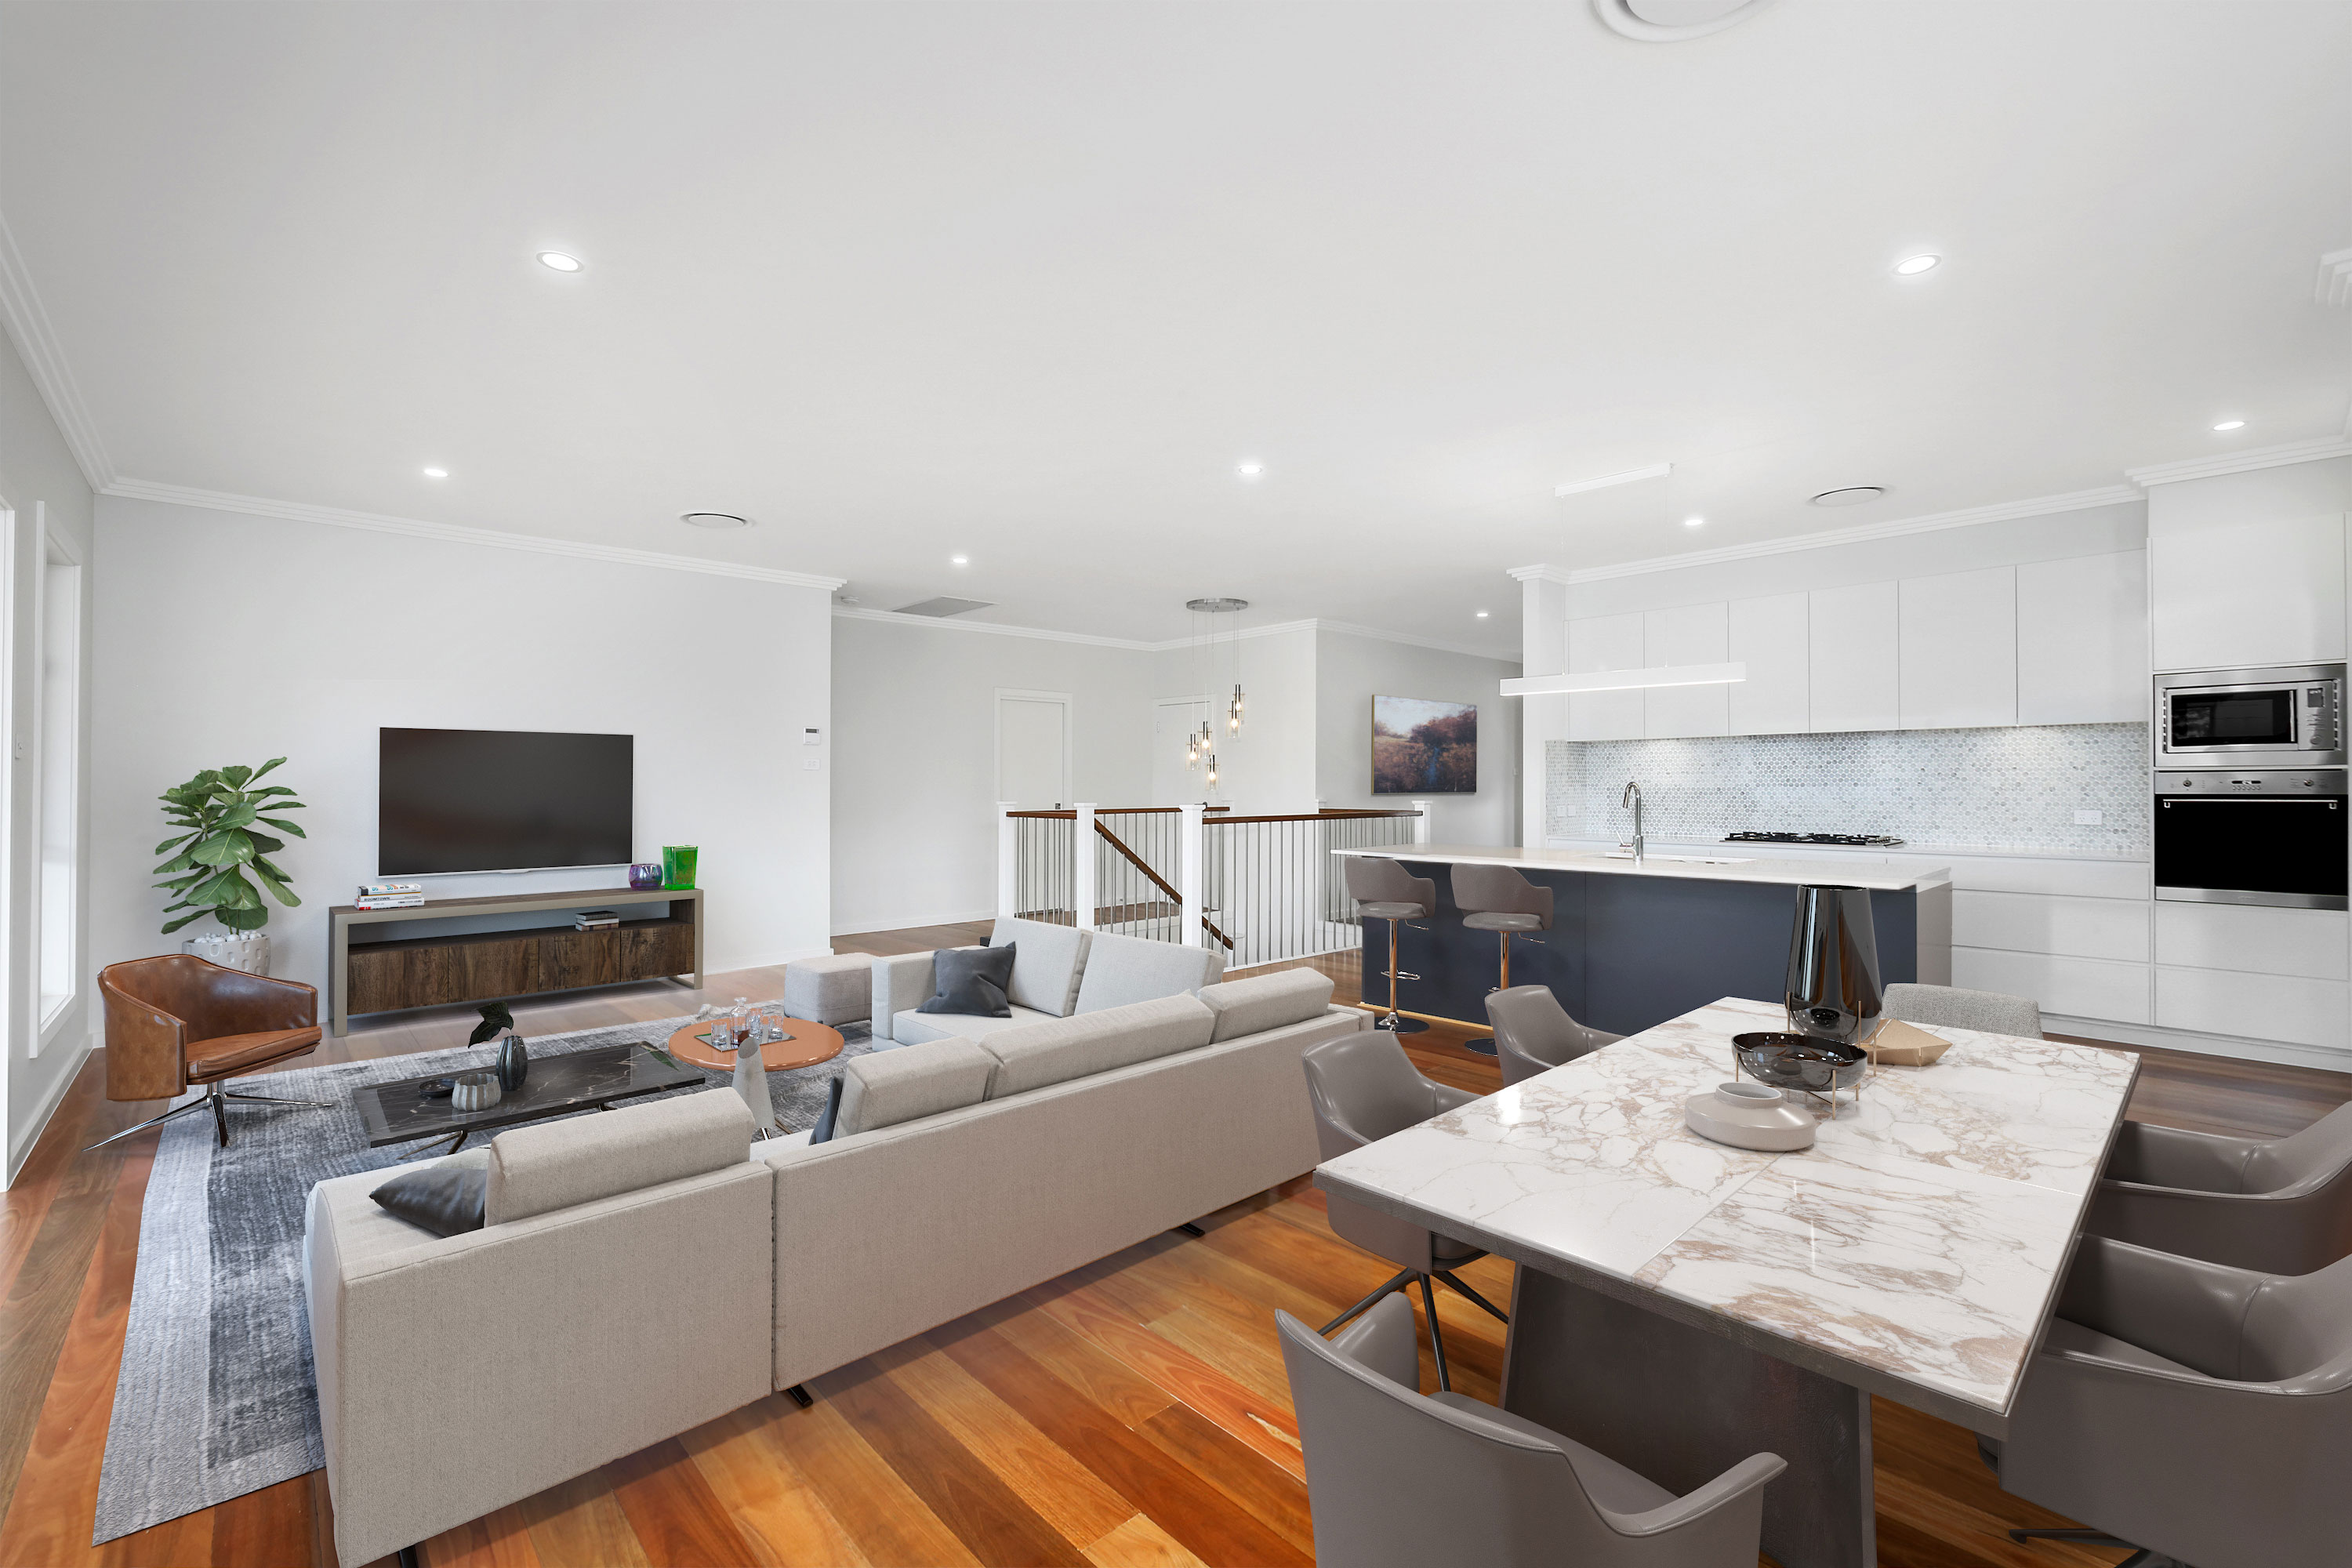 Open plan living area in a full split home design